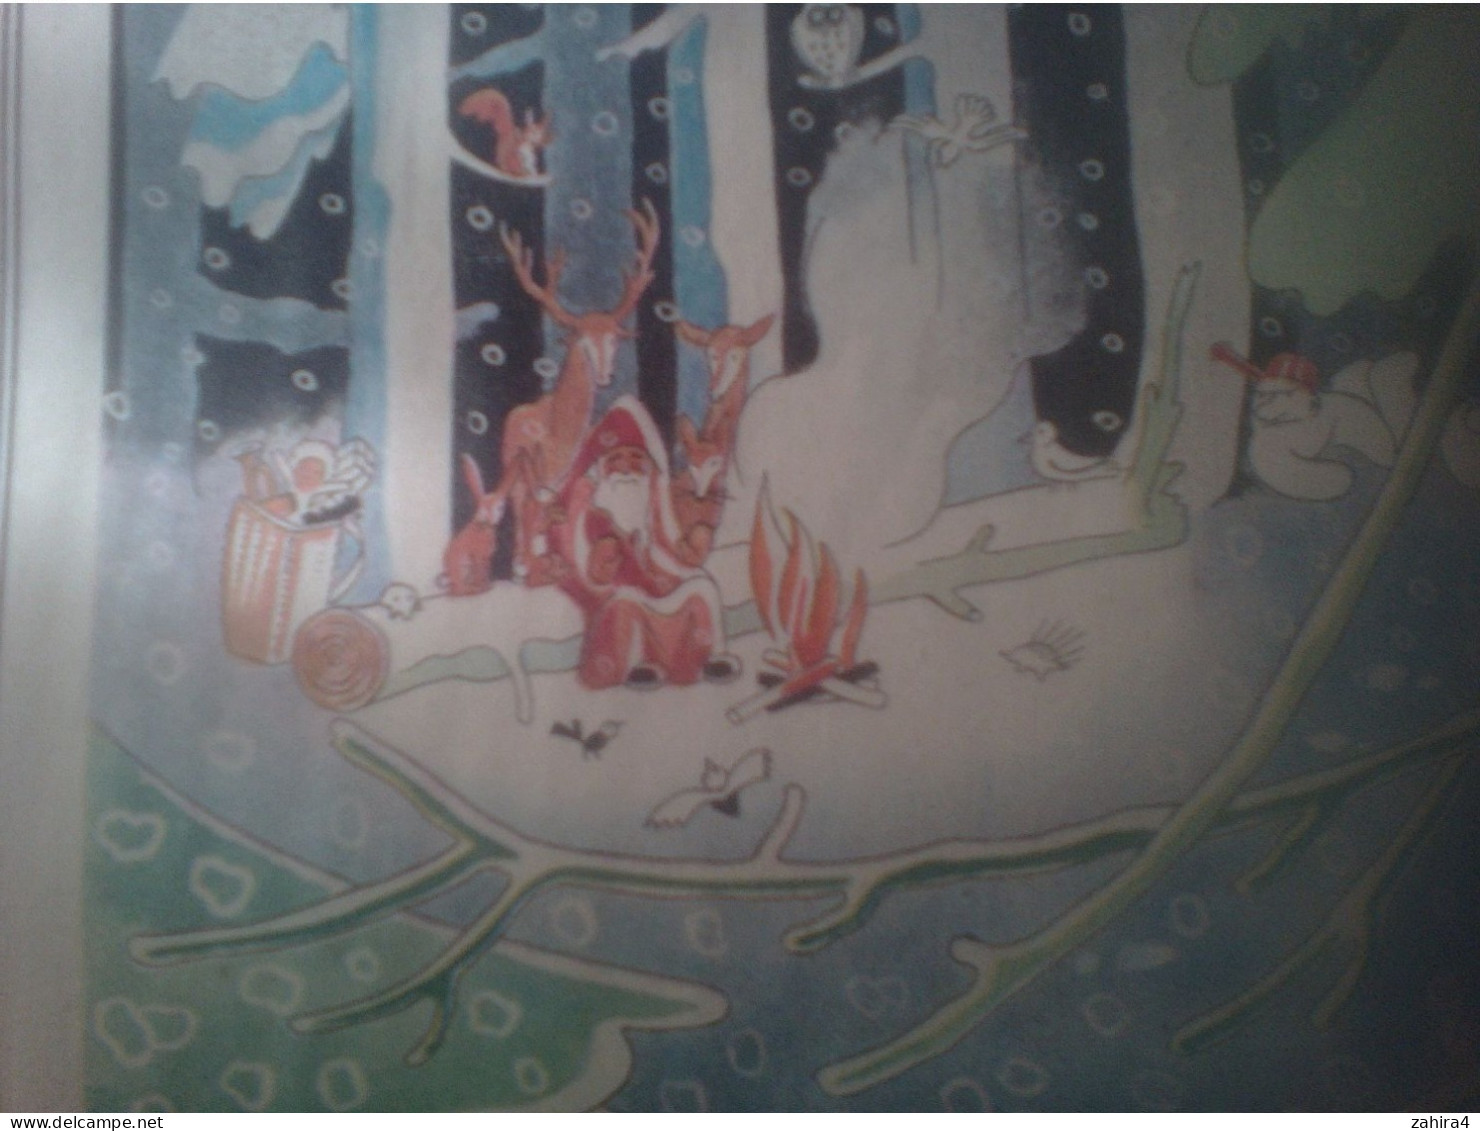 Temps de guerre A retaurer La fin des bonhommes de neige Teste  dessin P Piéron Arc en ciel Paris Superbe illusration